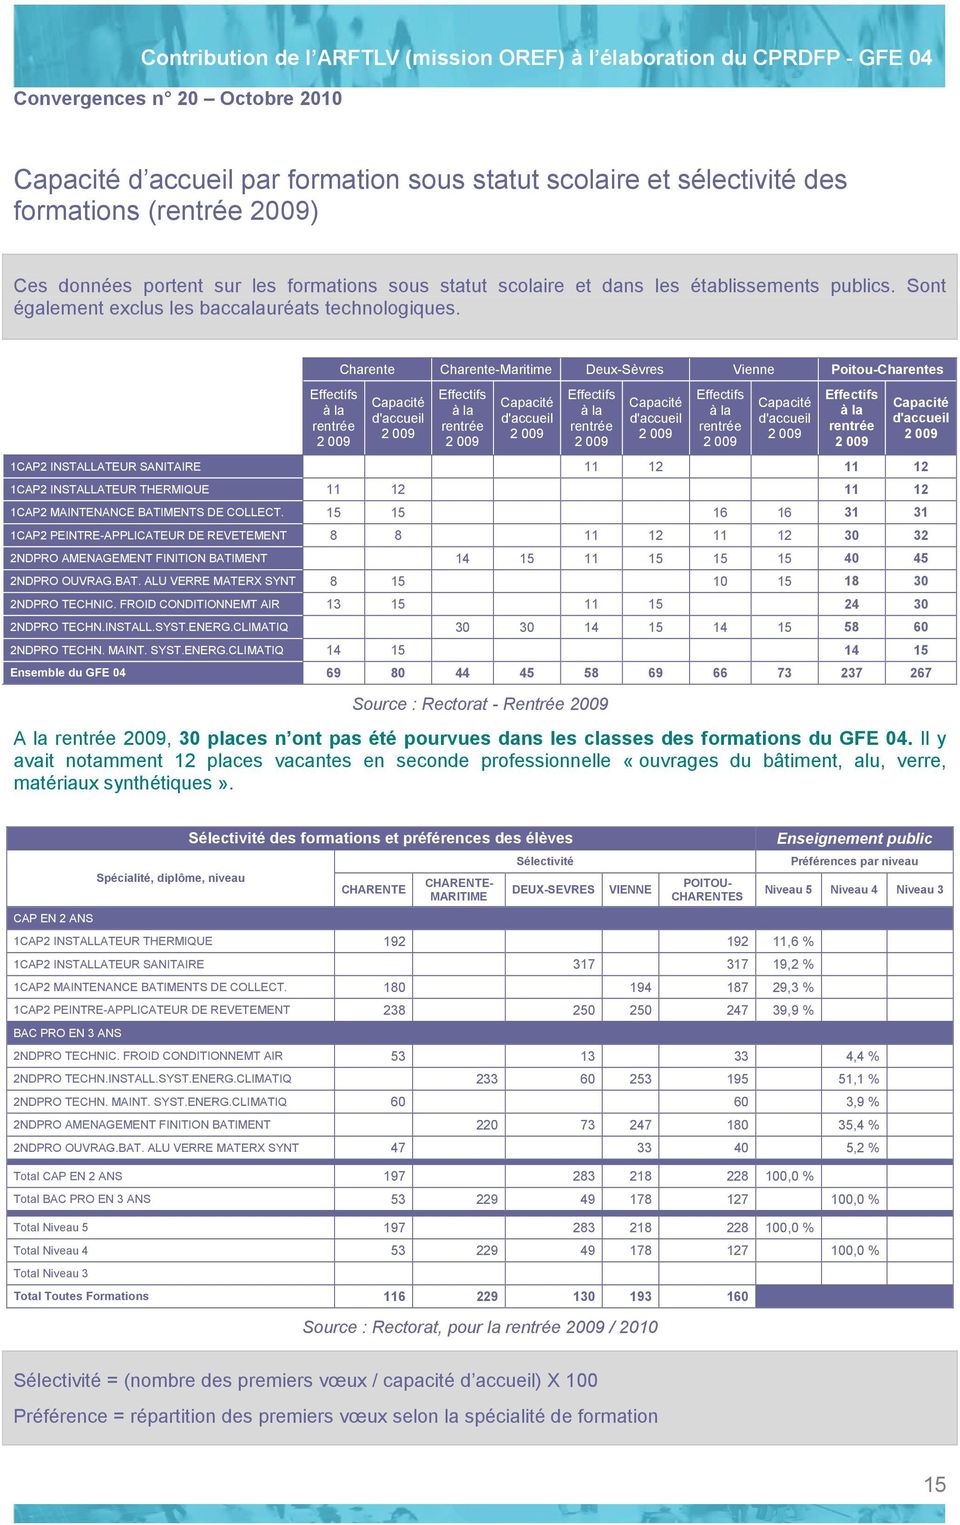 Effectifs à la rentrée 2 009 Charente Charente-Maritime Deux-Sèvres Vienne Poitou-Charentes Capacité d'accueil 2 009 Effectifs à la rentrée 2 009 Capacité d'accueil 2 009 Effectifs à la rentrée 2 009